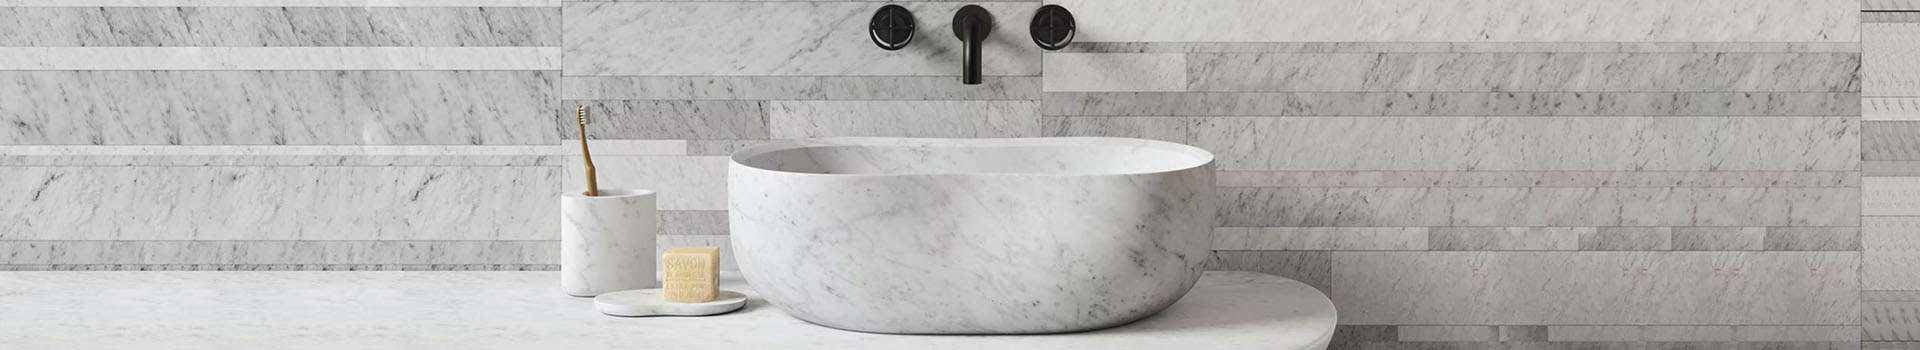 Grey Riverstone Bathroom Countertop Basins